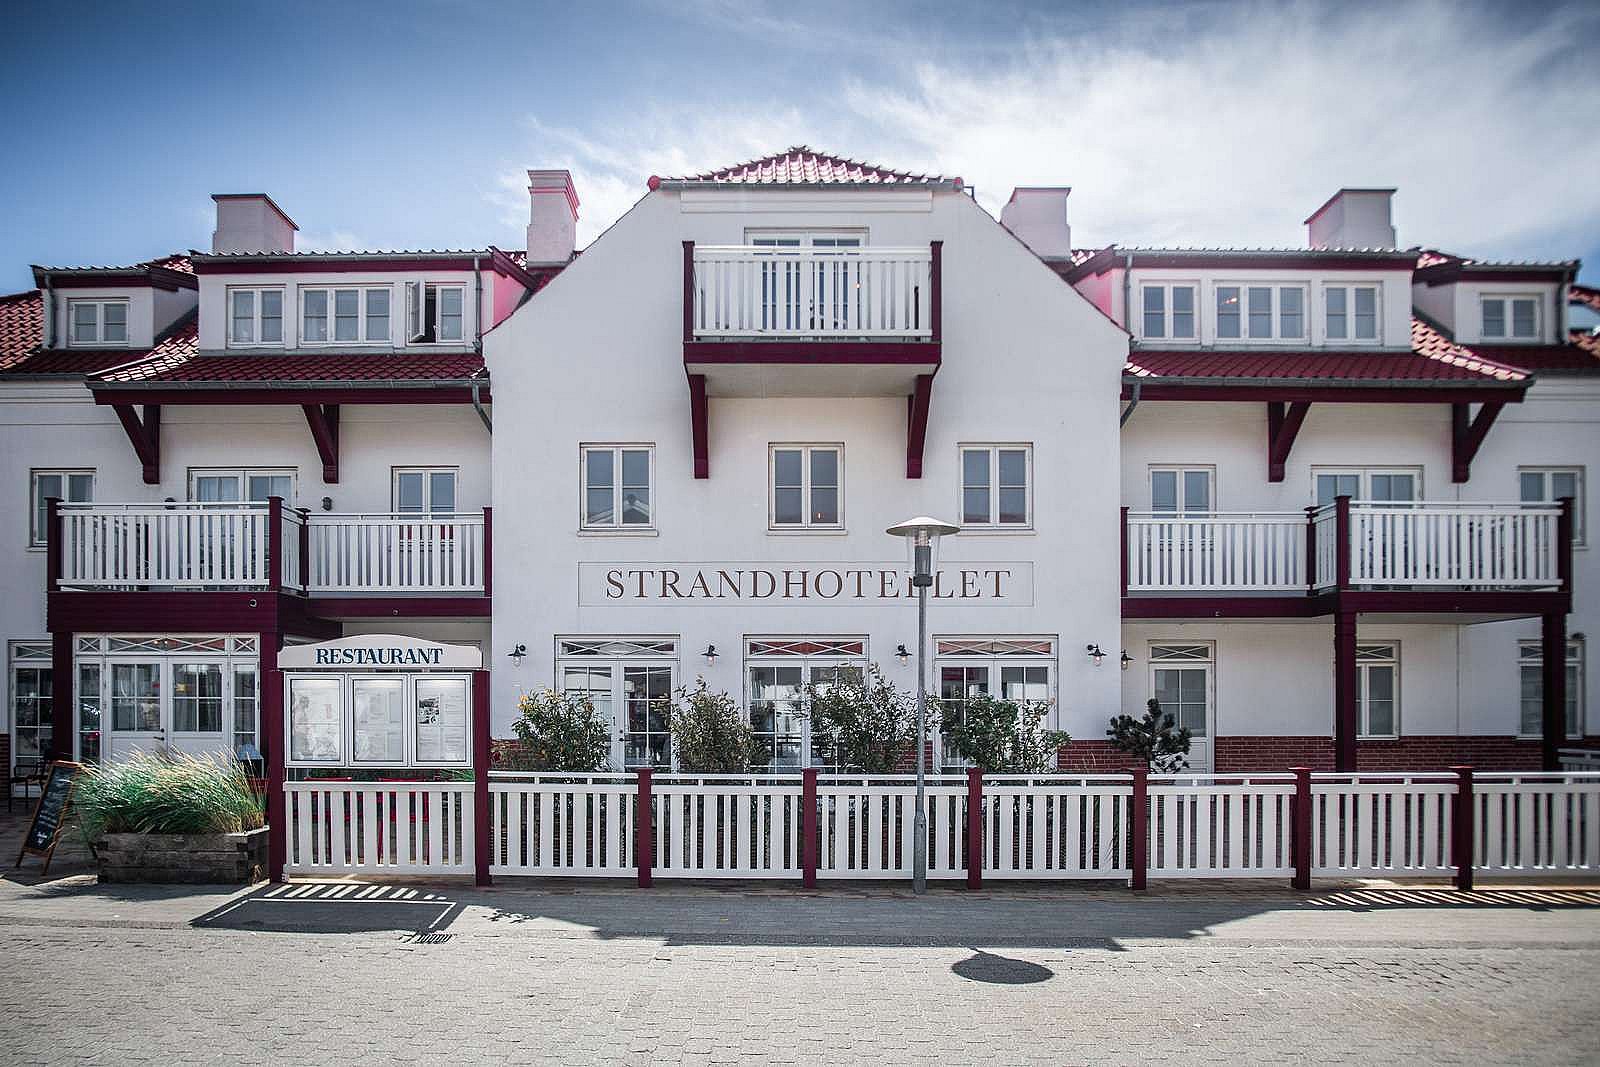 Strandhotellet Blokhus er et af de steder, gæsterne skal overnatte efter en hel dags vandring.